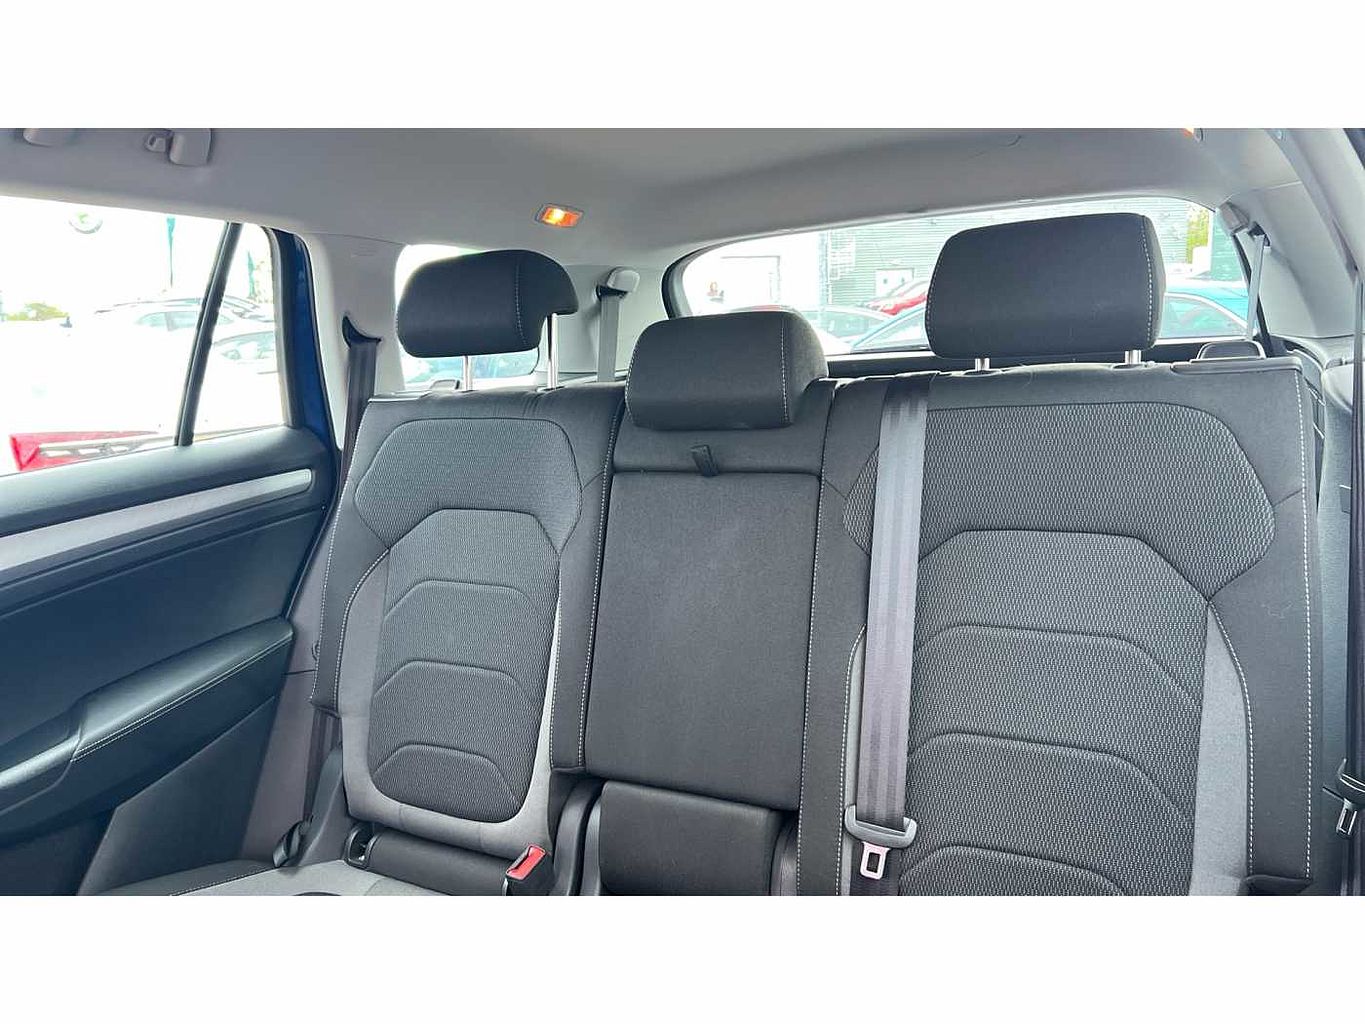 SKODA Kodiaq 2.0TDI 150ps 4X4 SE Drive (7 seats ) DSG SUV